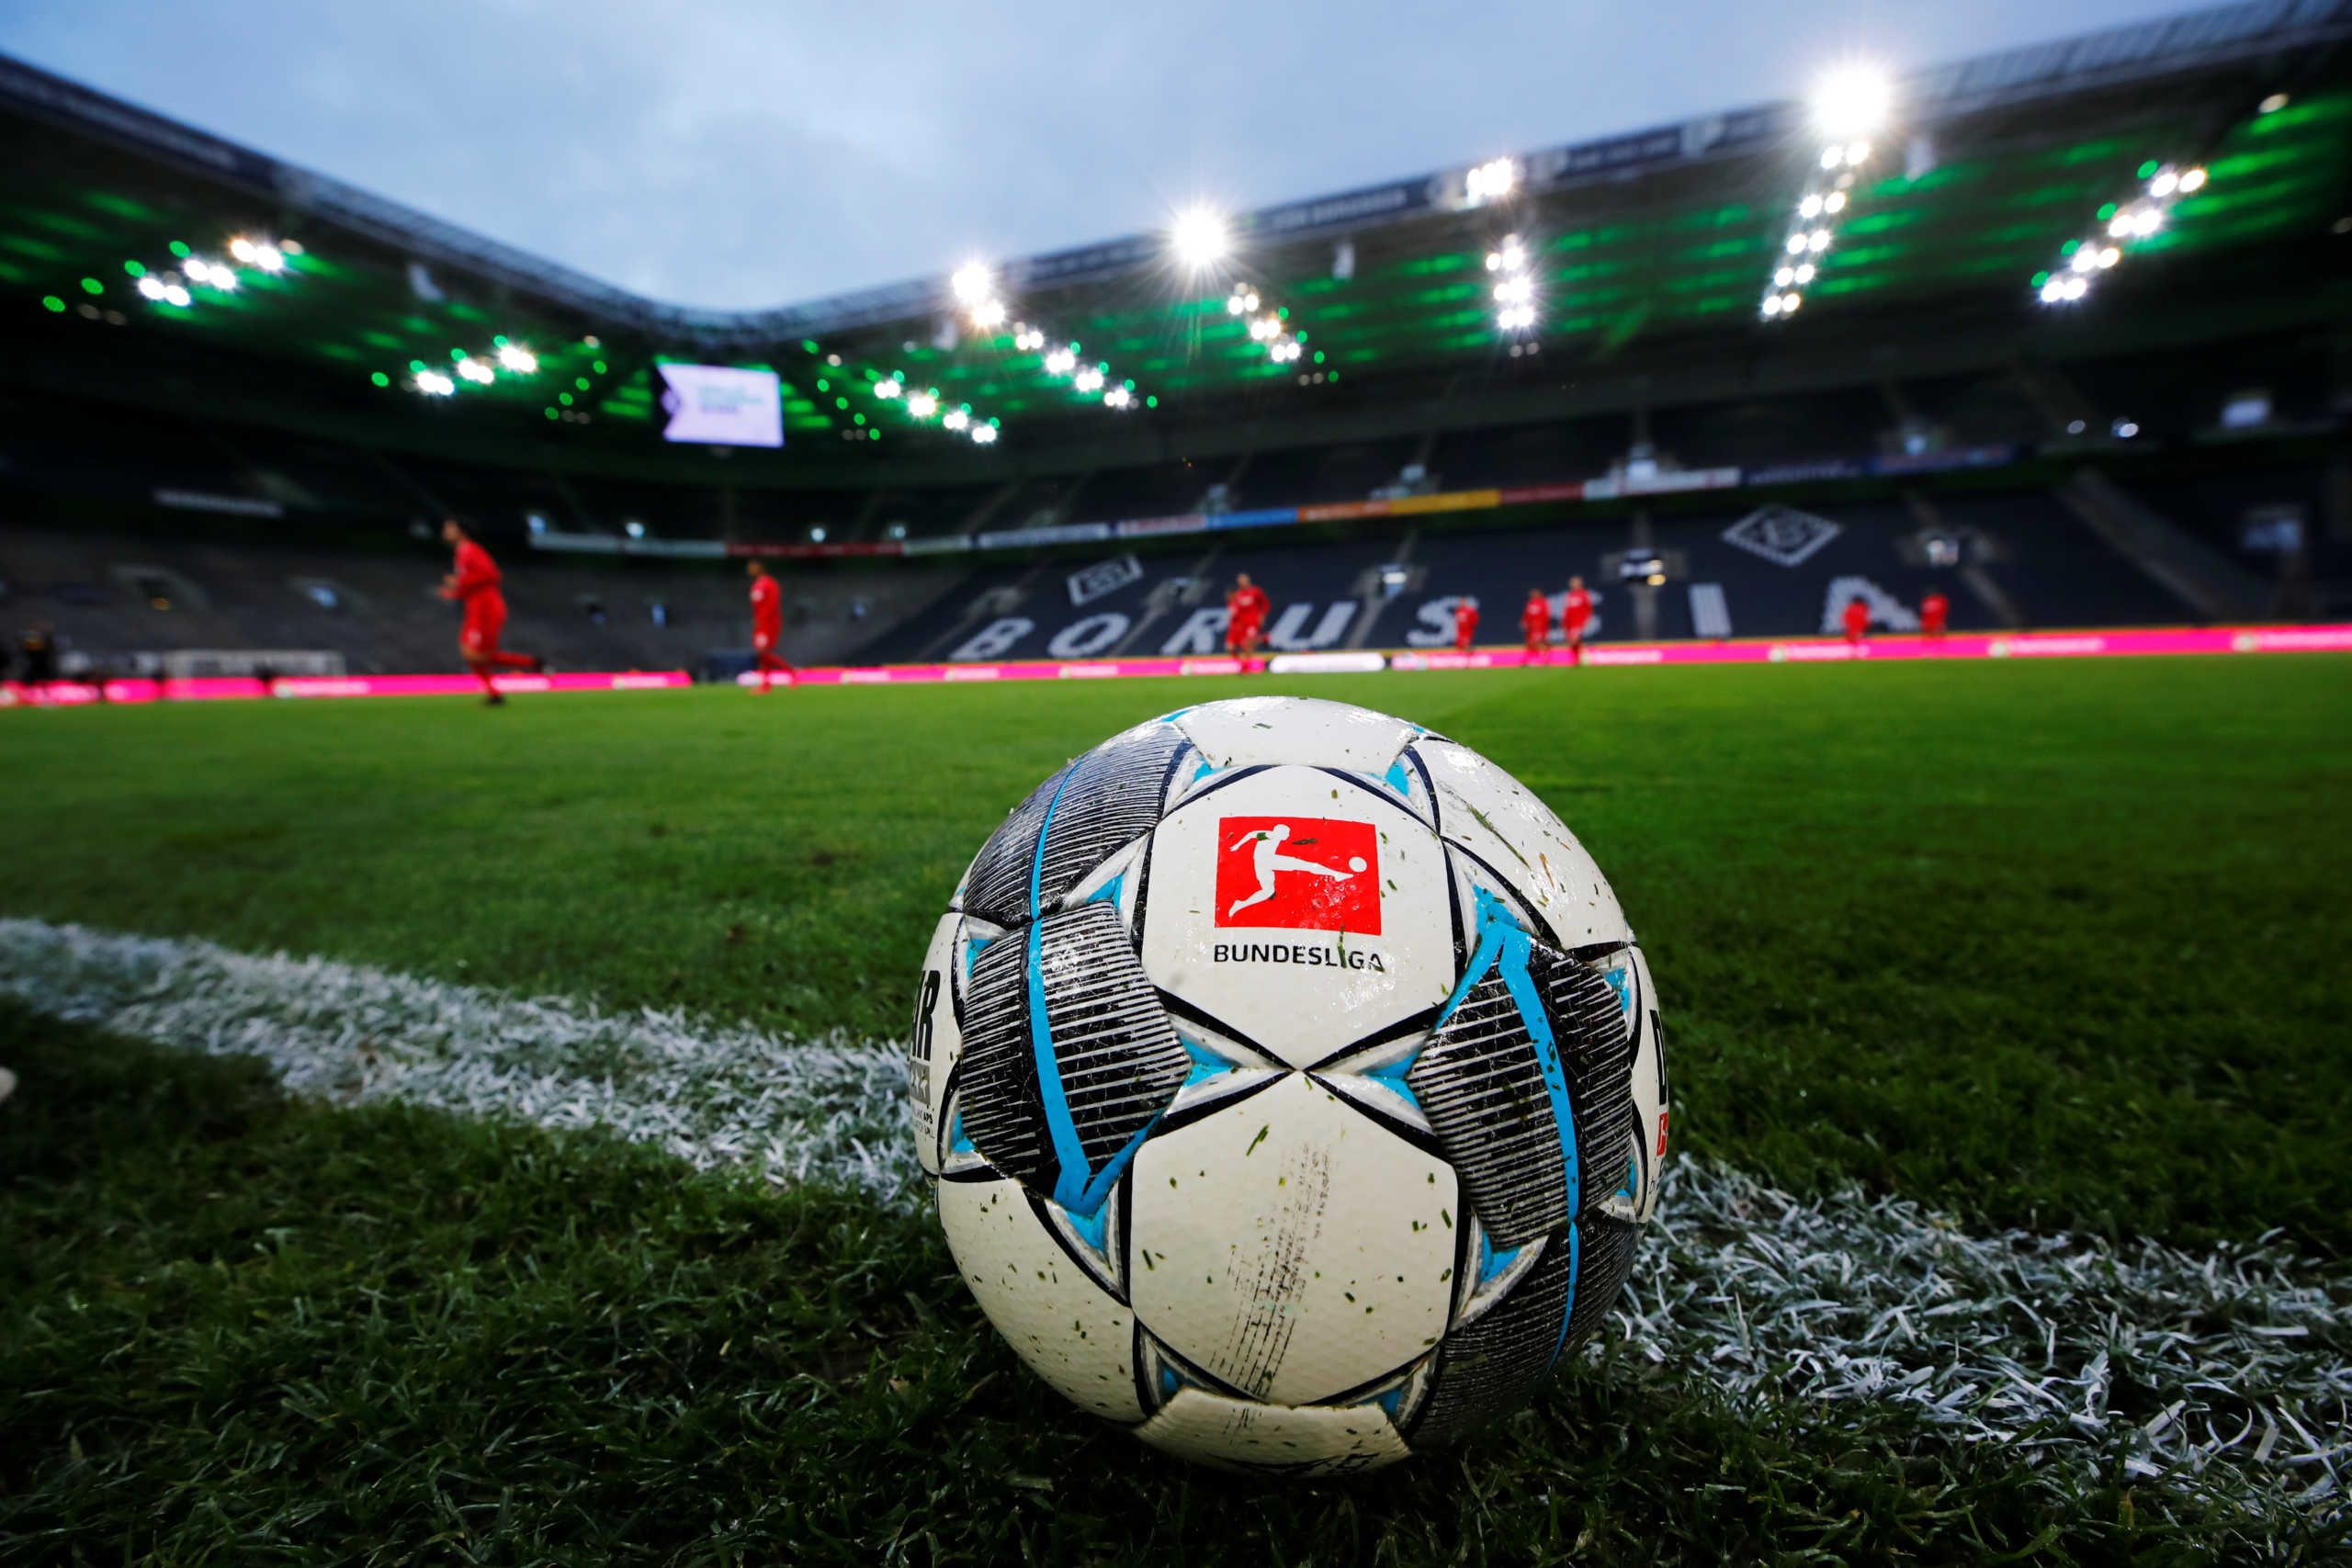 “Στοπ” στην παρουσία φιλάθλων στην πρεμιέρα της Bundesliga! Χωρίς κόσμο το Μπάγερν – Σάλκε